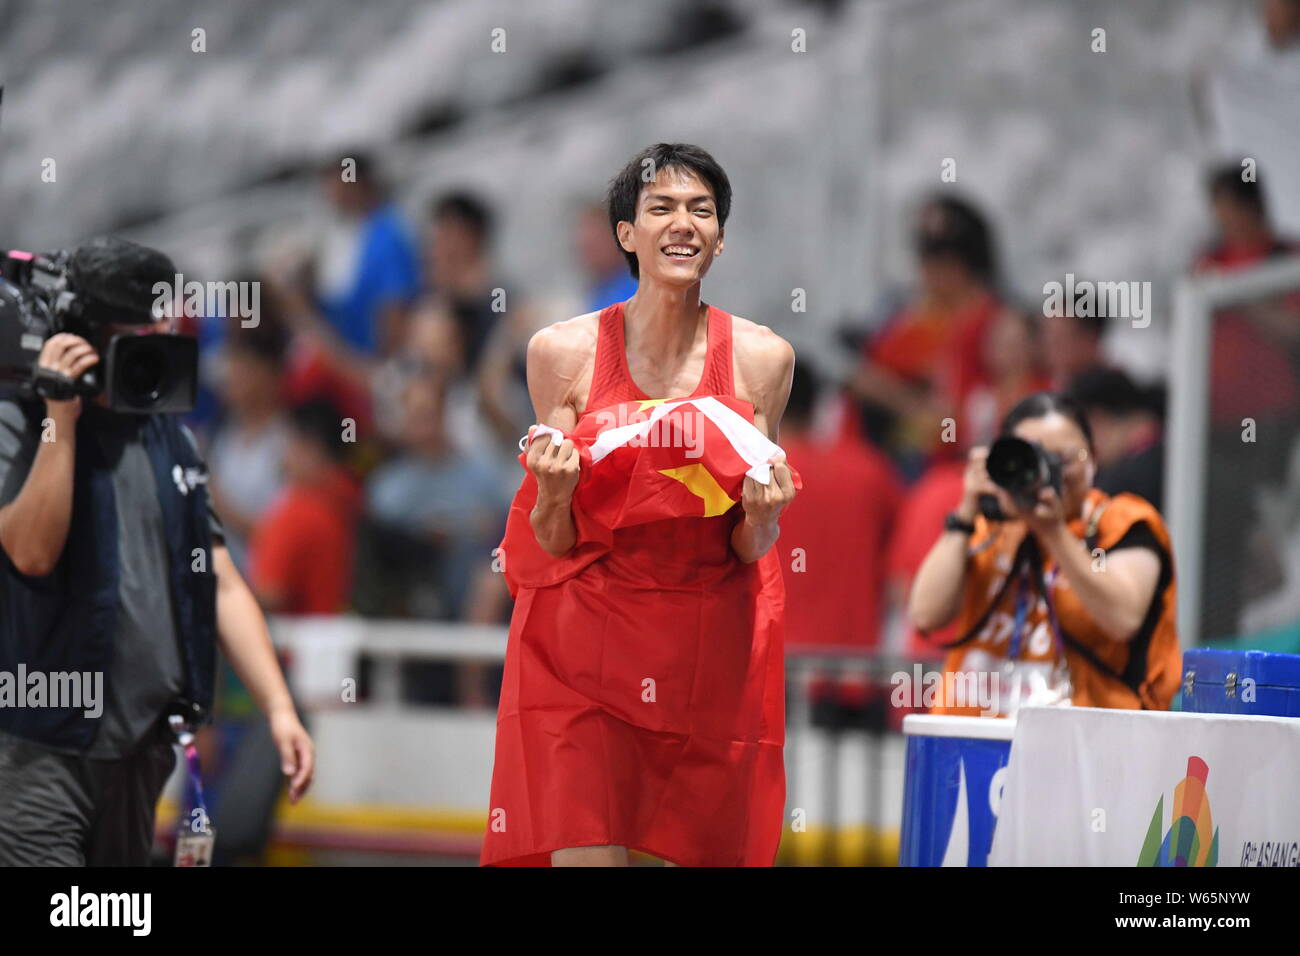 Wang Yu aus China feiert nach dem Gewinn Hohe gingen auch die letzten von Athletik während die 2018 bei den asiatischen Spielen, offiziell als der 18. asiatischen Spiele bekannt Stockfoto